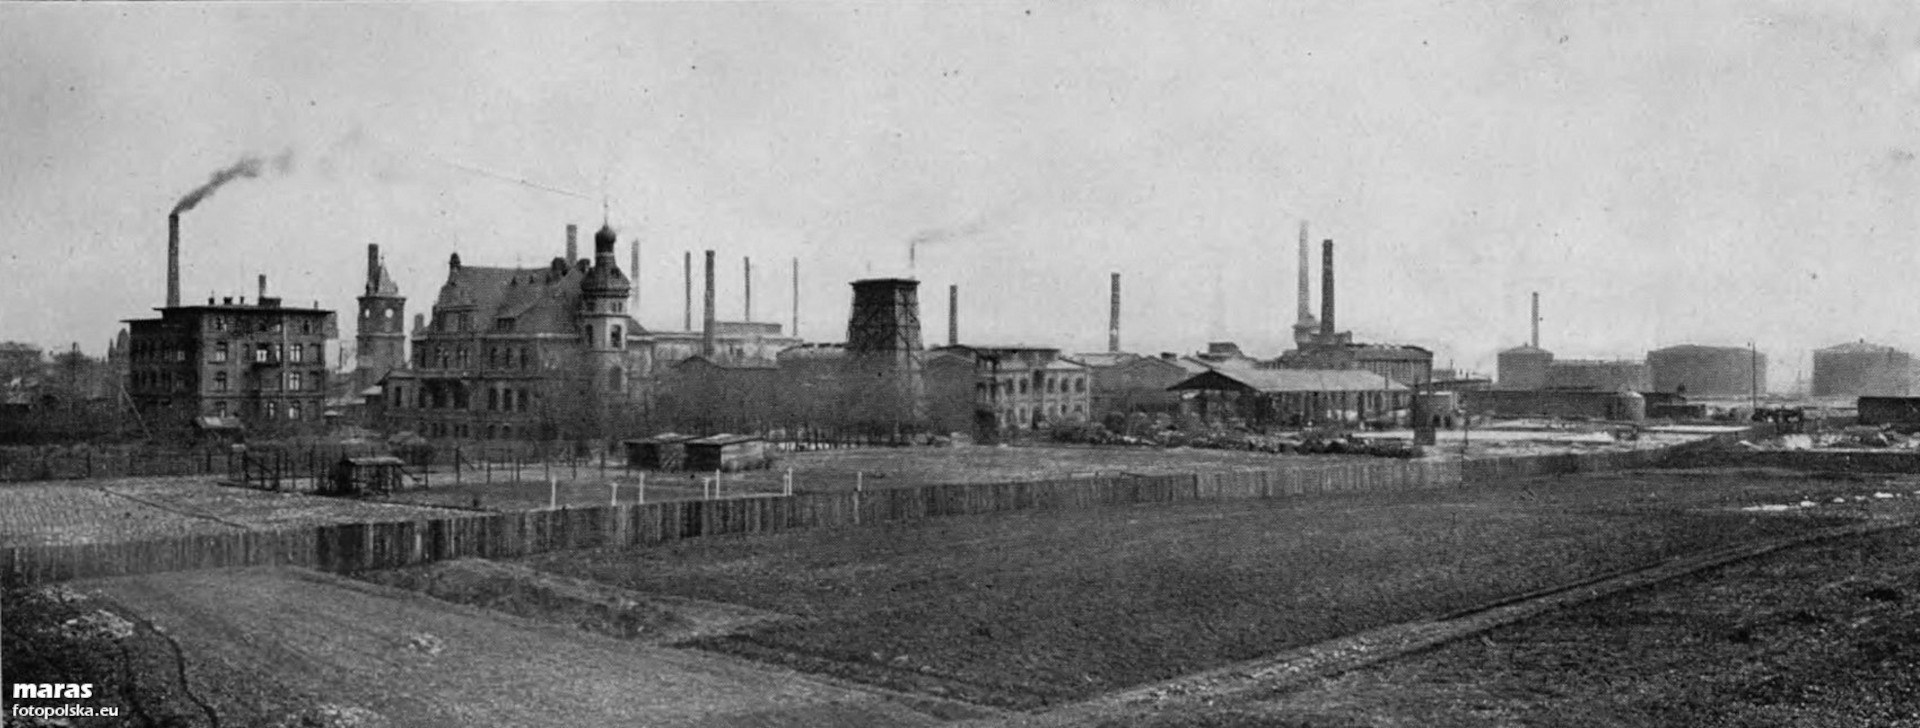 Dawne zakłady przemysłowe Chorzowa